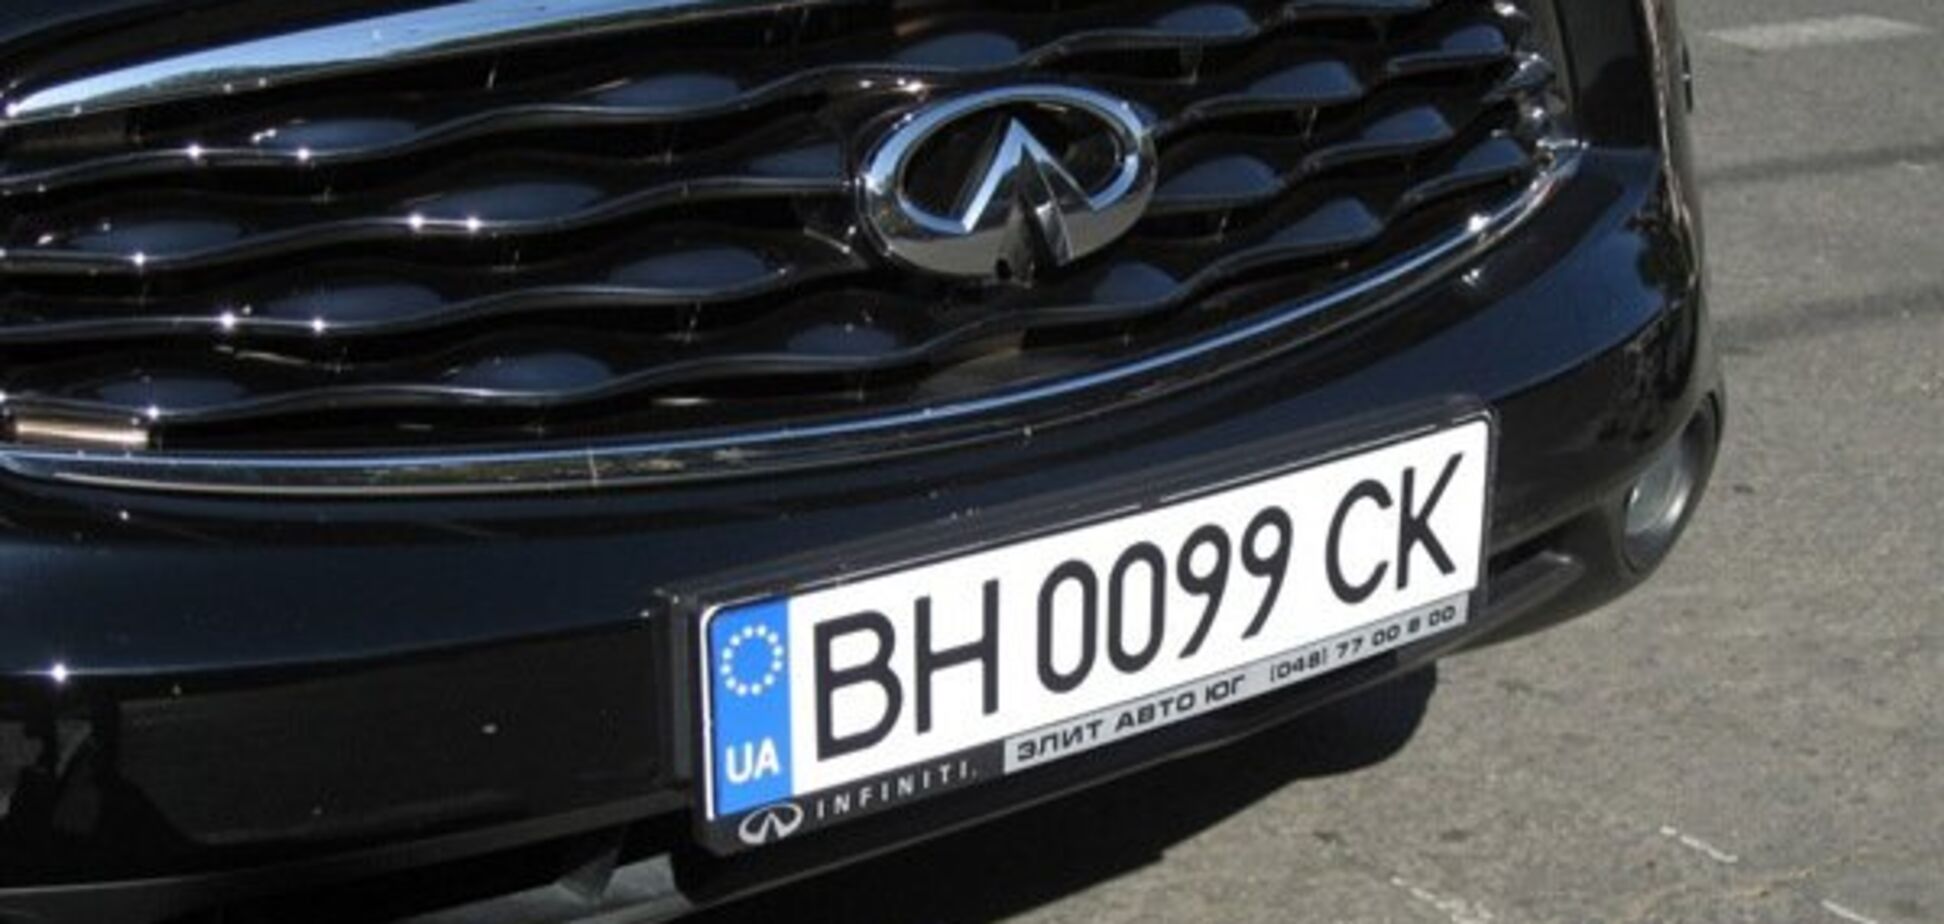 ''Преступление и шантаж'': Украину предупредили об опасности авто на еврономерах